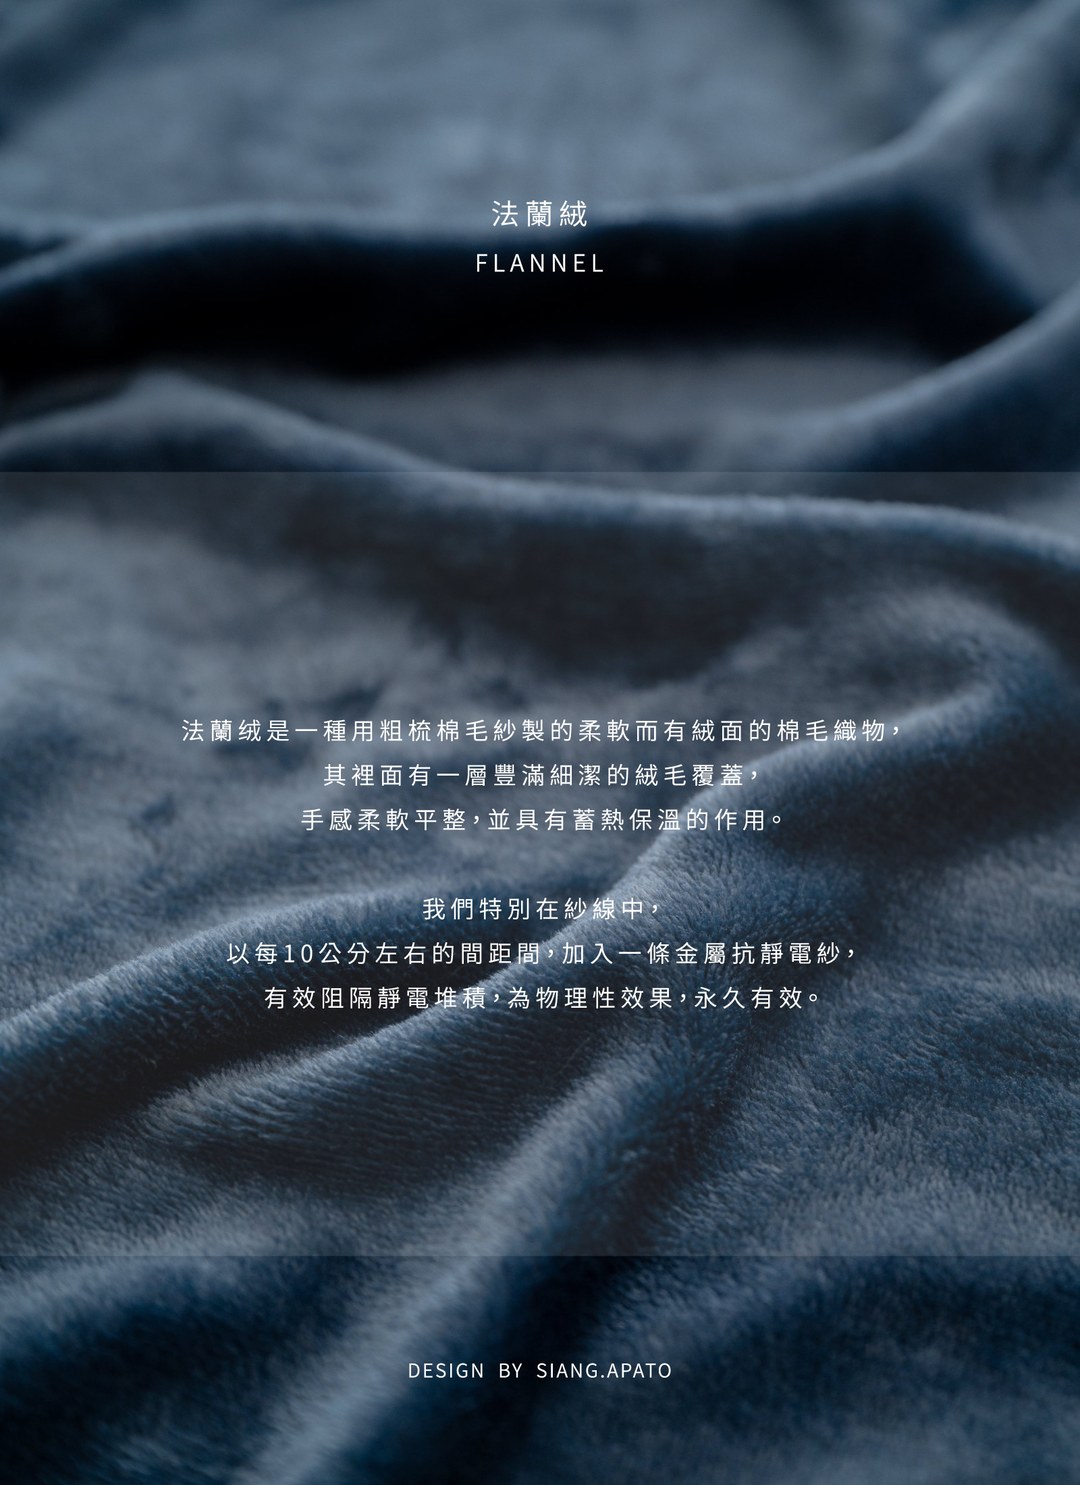 月光霧藍 - 法蘭絨四件組 ( 床包 + 被套  + 枕套 )